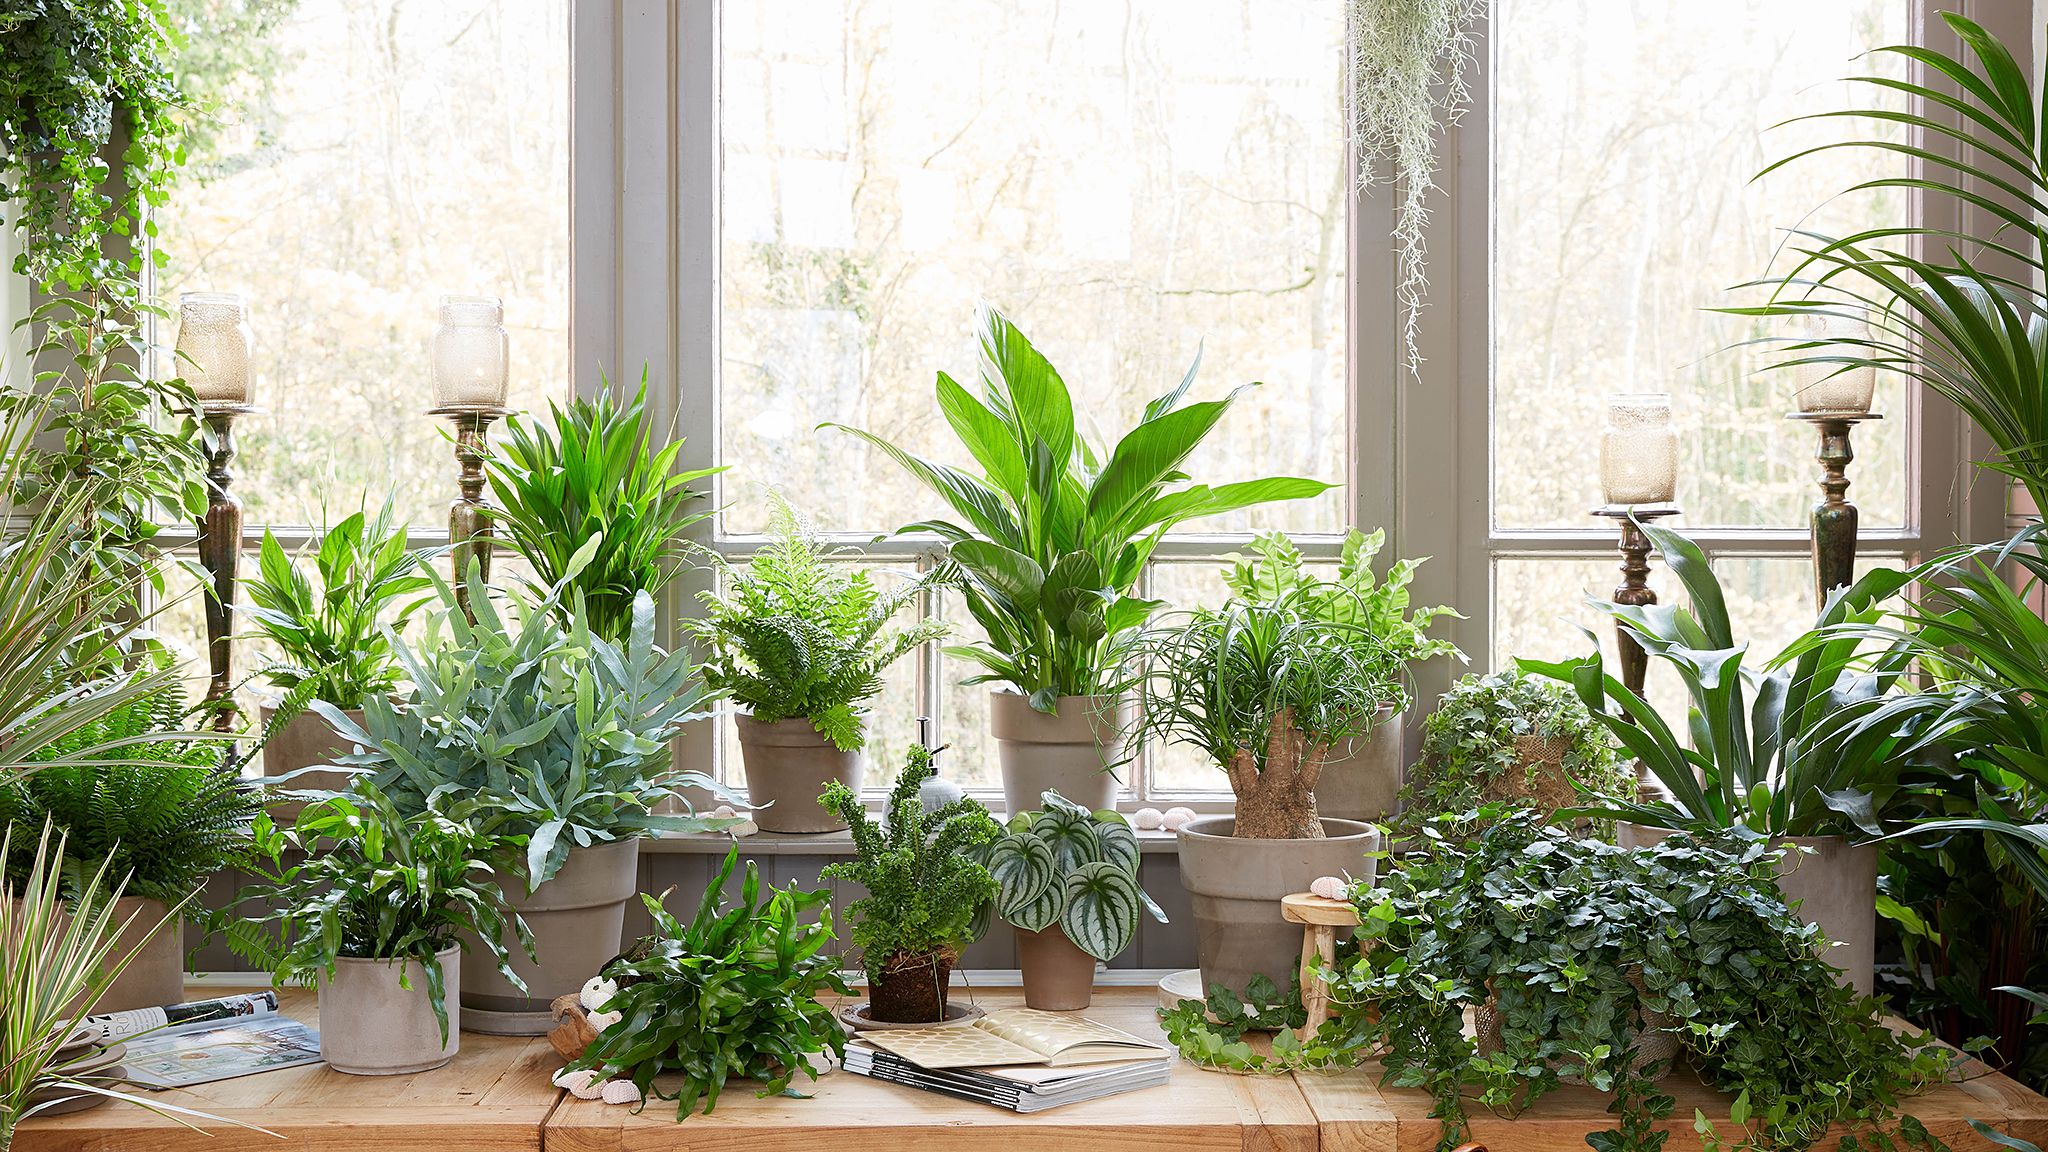 عکس پنچره با نمای گیاهان آپارتمانی